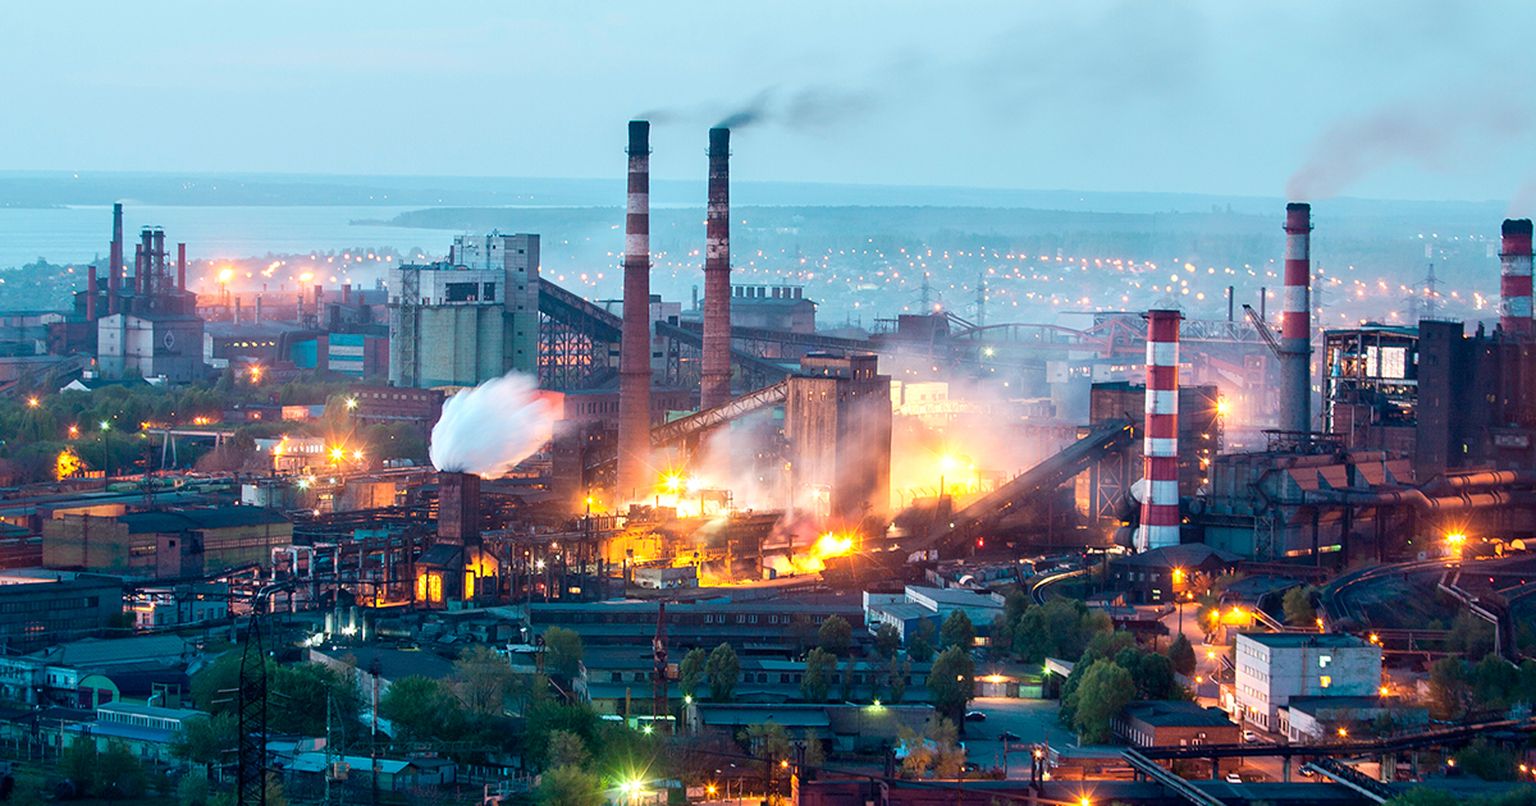 Общий вид завода Запорожсталь – одного из промышленных гигантов юга Украины.